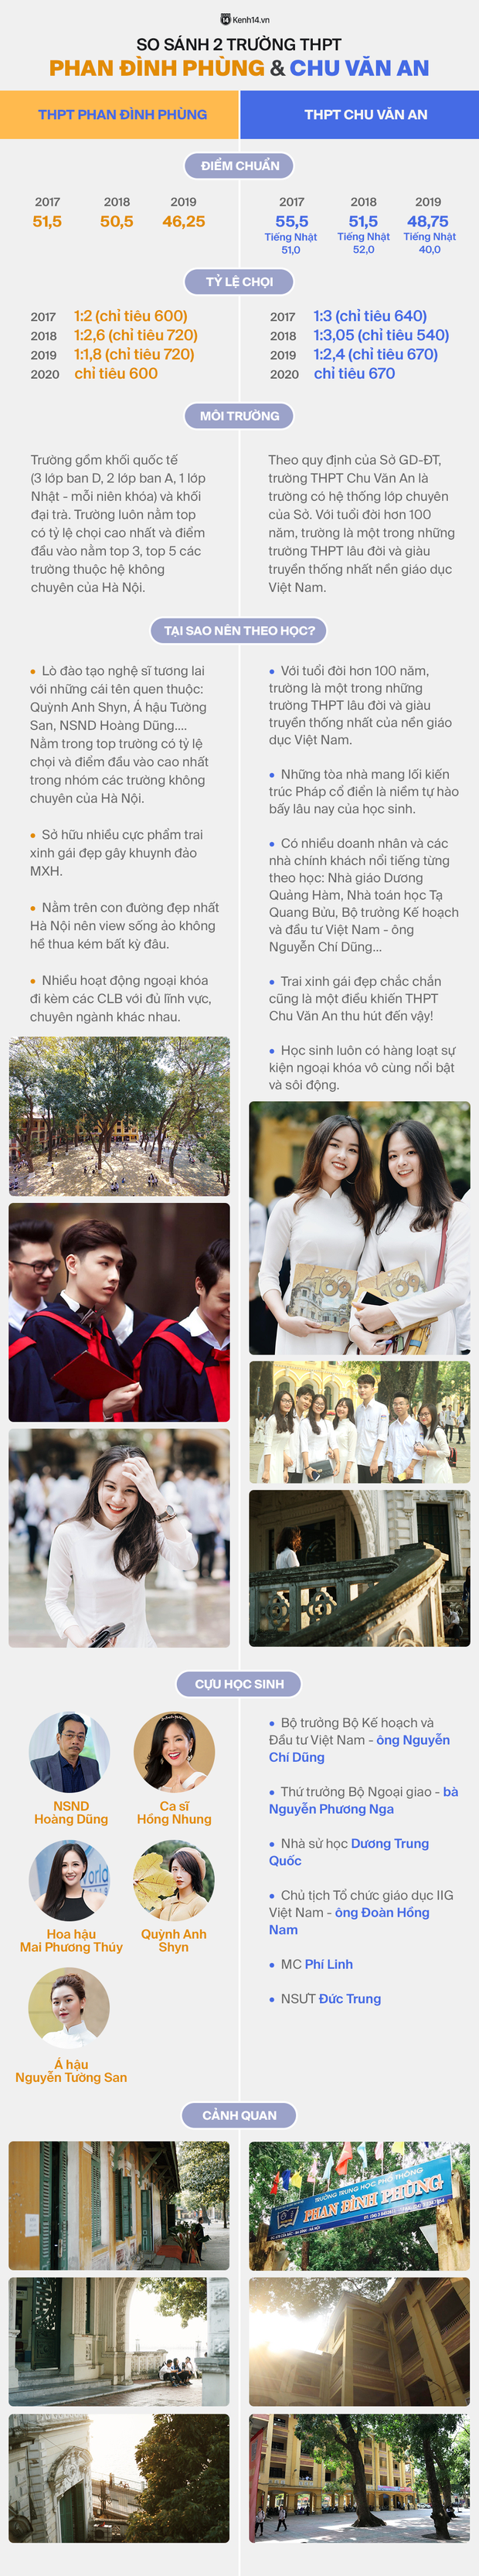 So sánh 2 ngôi trường THPT đình đám nhất Hà Nội: THPT Phan Đình Phùng và THPT Chu Văn An - Ảnh 1.